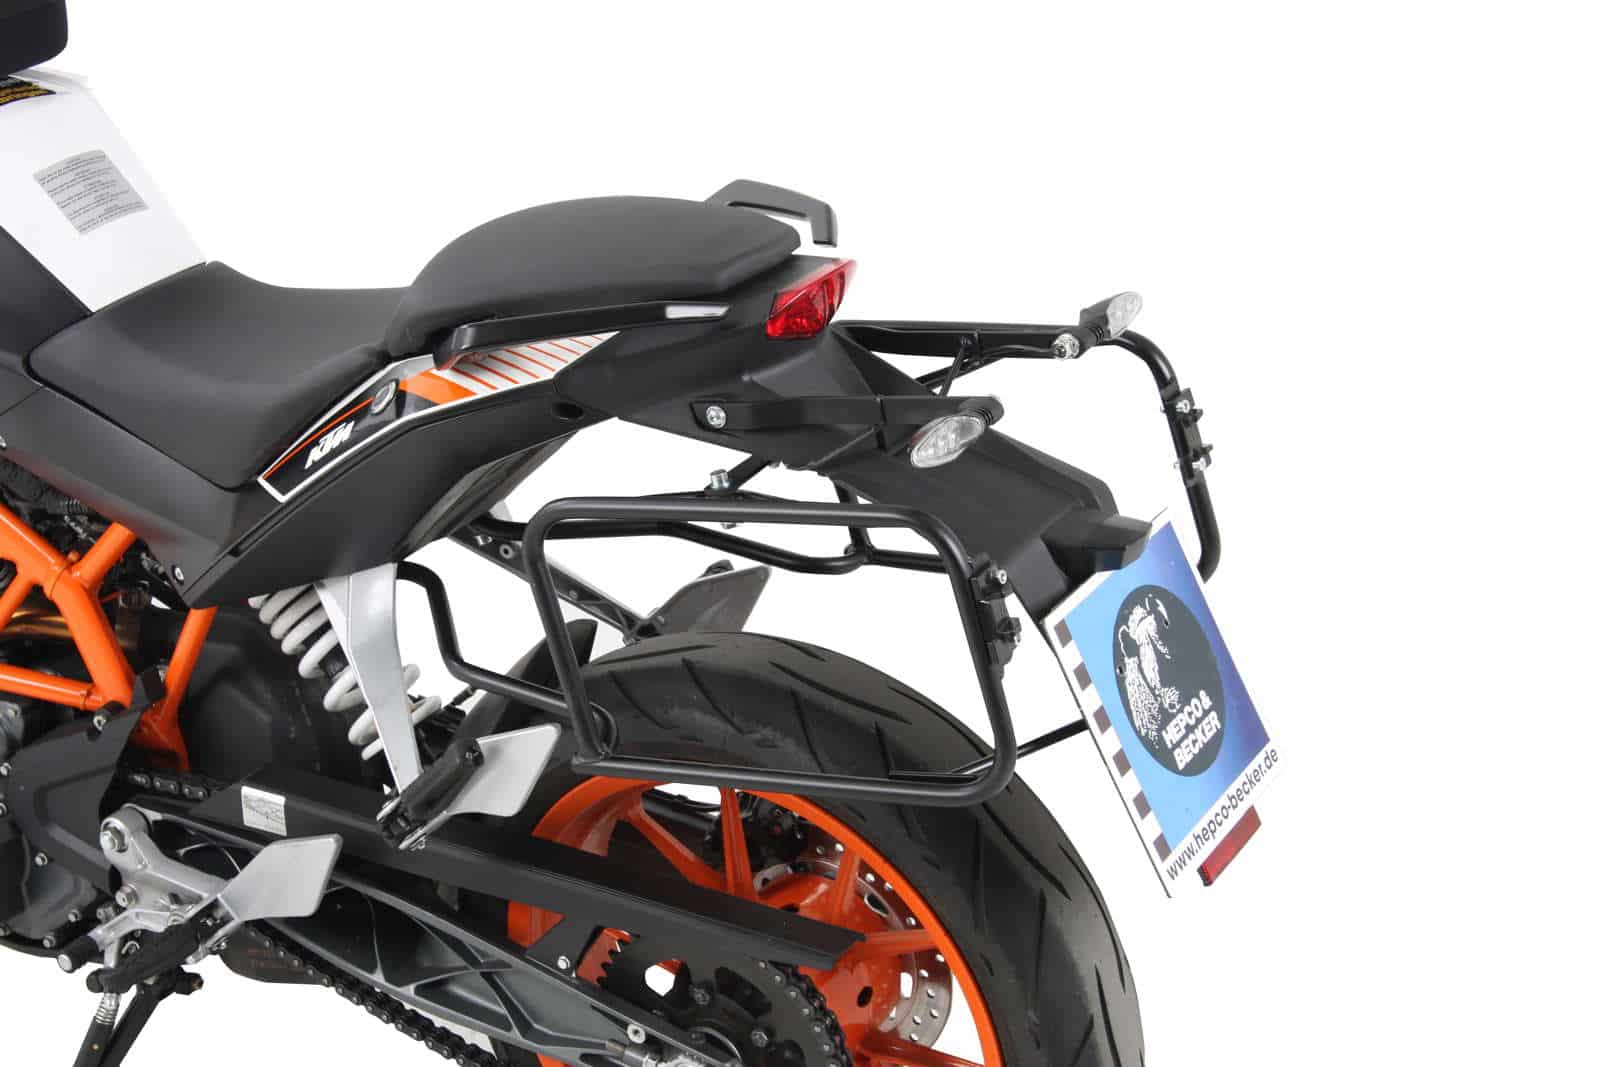 Sidecarrier permanent mounted black for KTM 390 Duke (2013-2016)